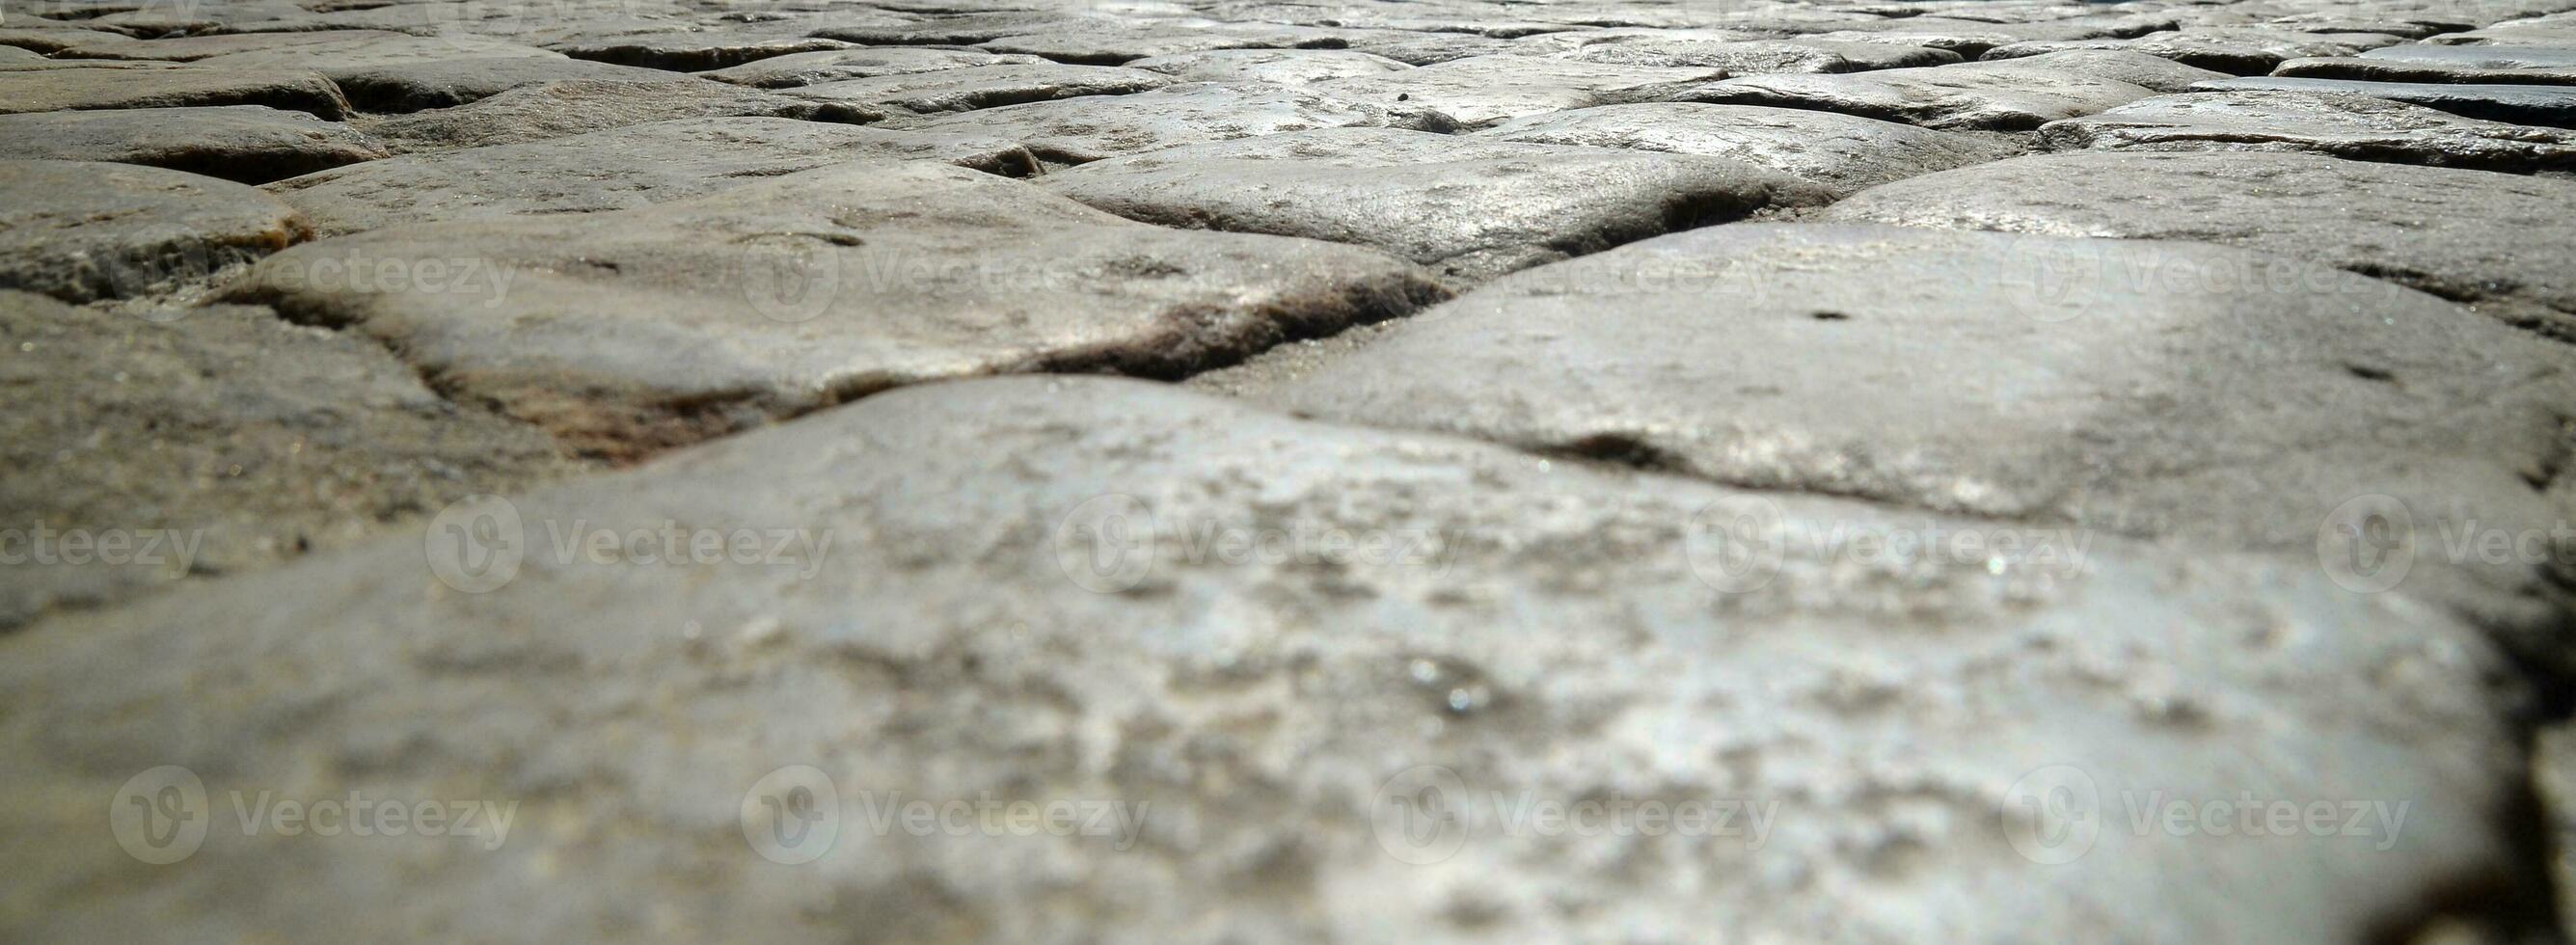 pedra calçada do a estrada foto